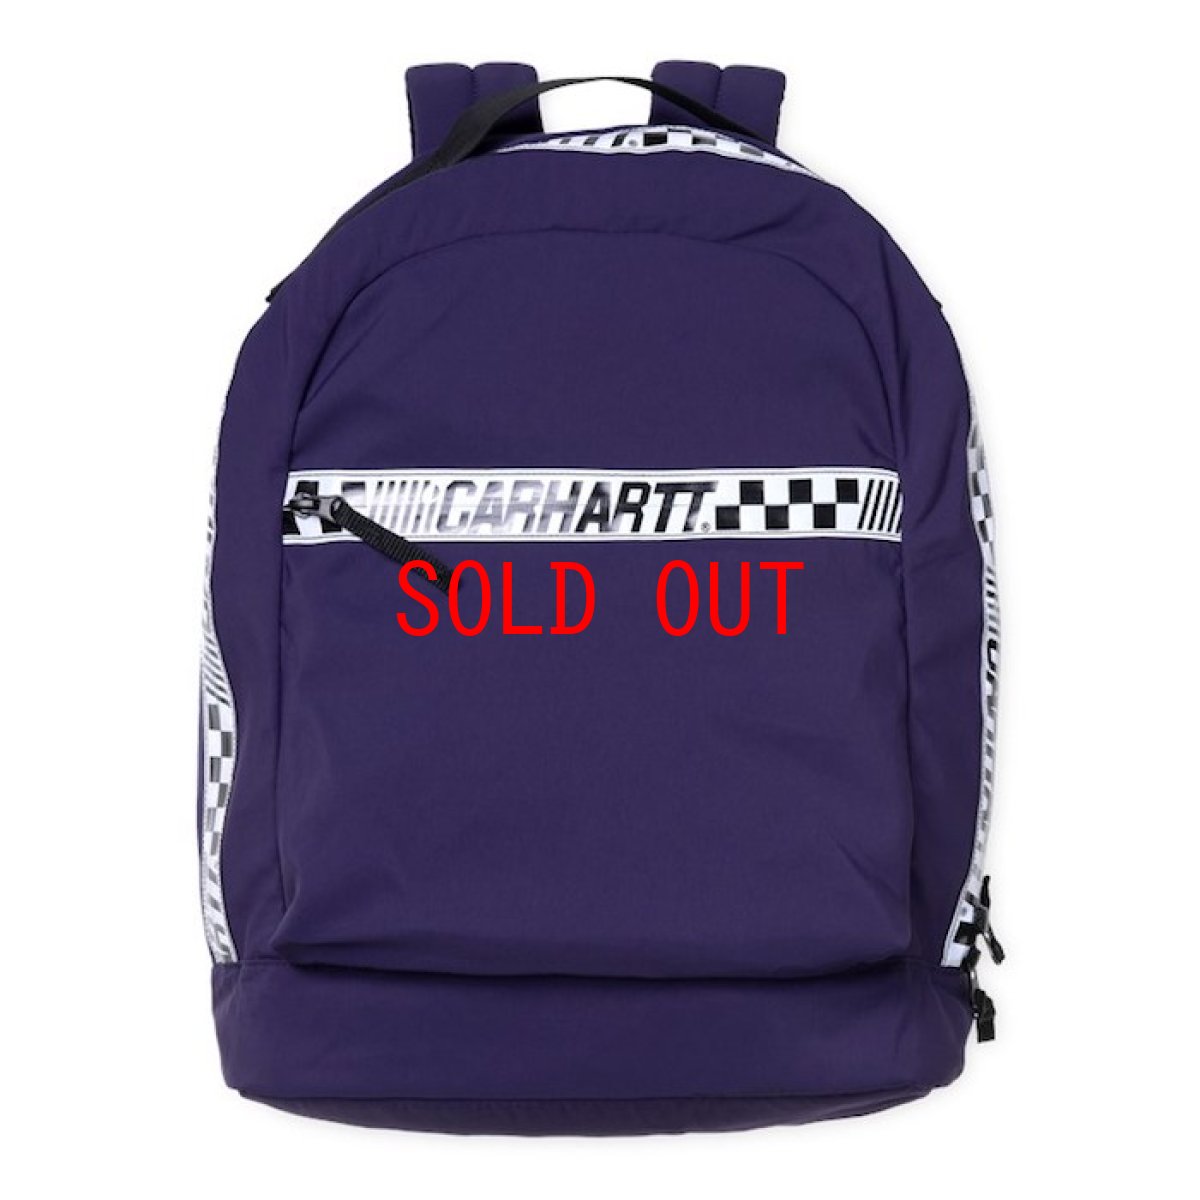 画像1: Senna Backpack Black Purple Lace 18.3liter 撥水加工 バックパック バッグ カバン 鞄 (1)